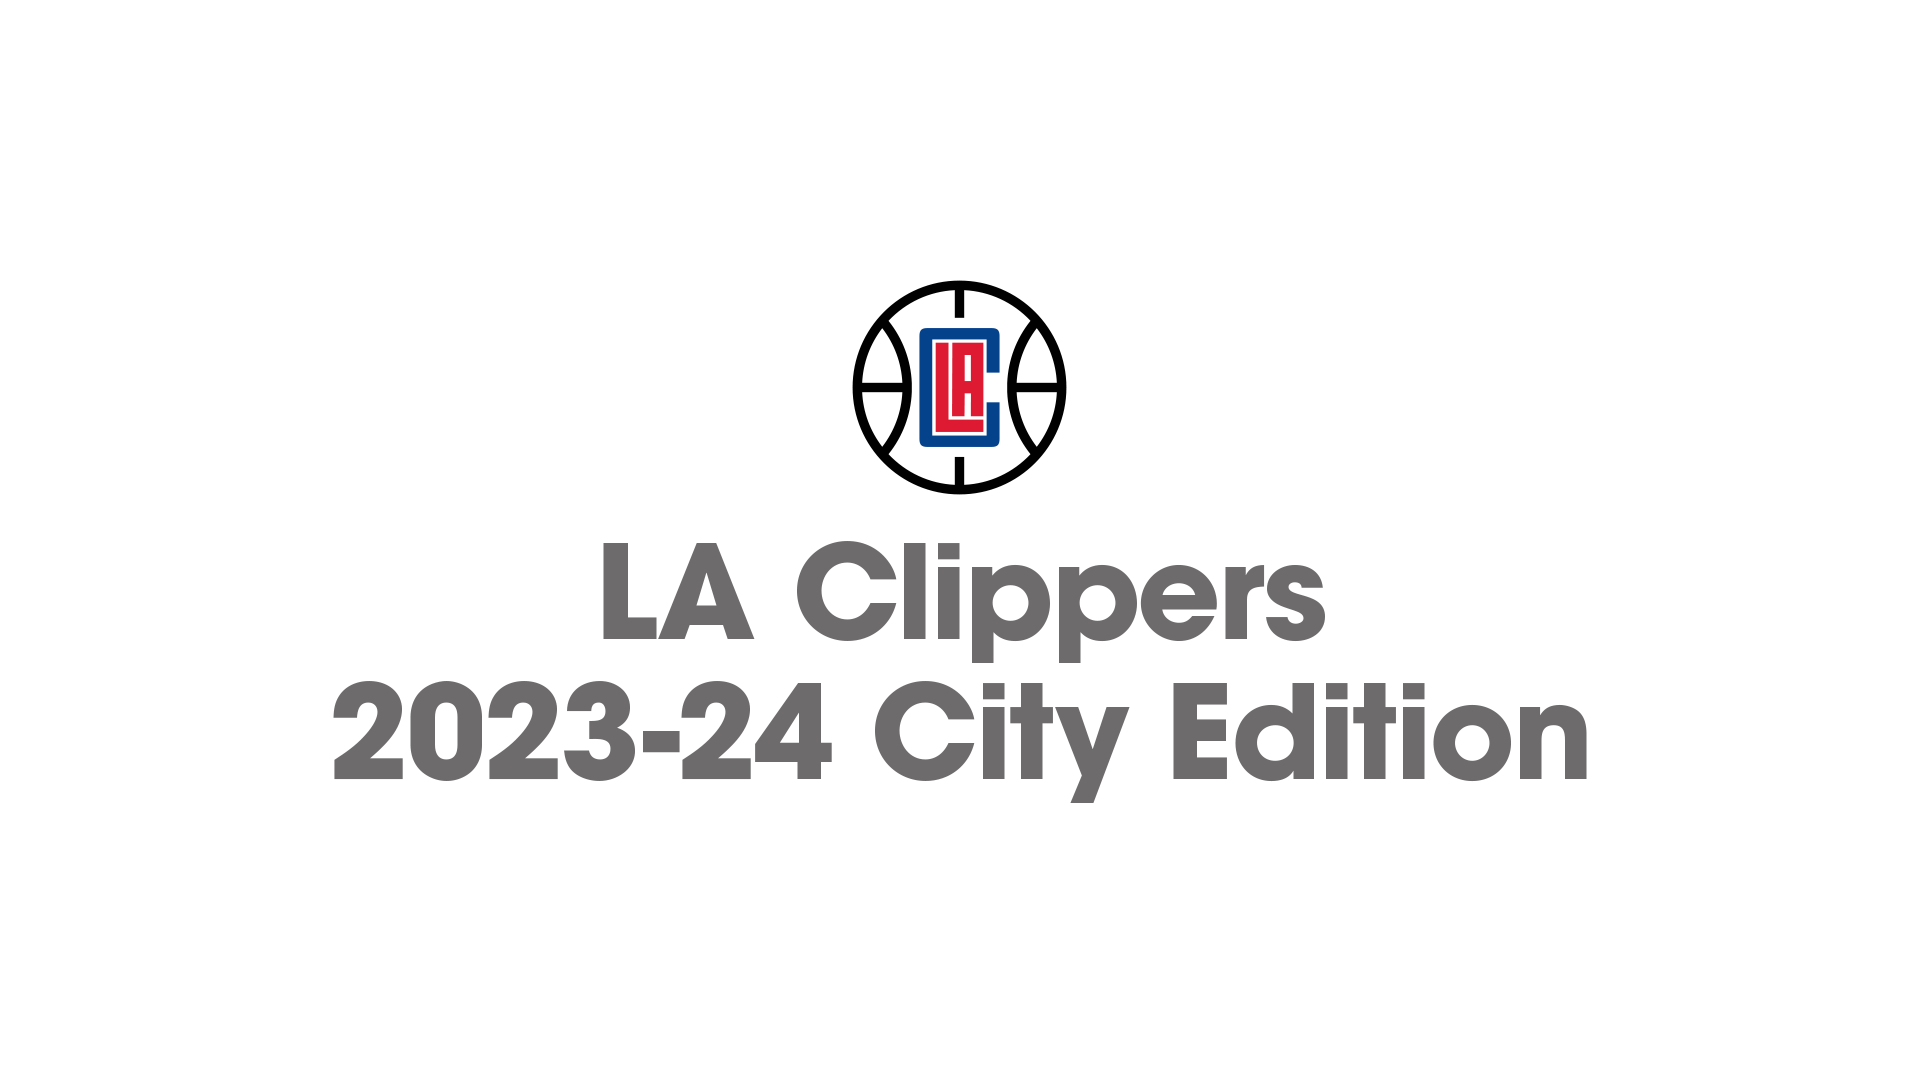 LA Clippers 2023-24 City Edition